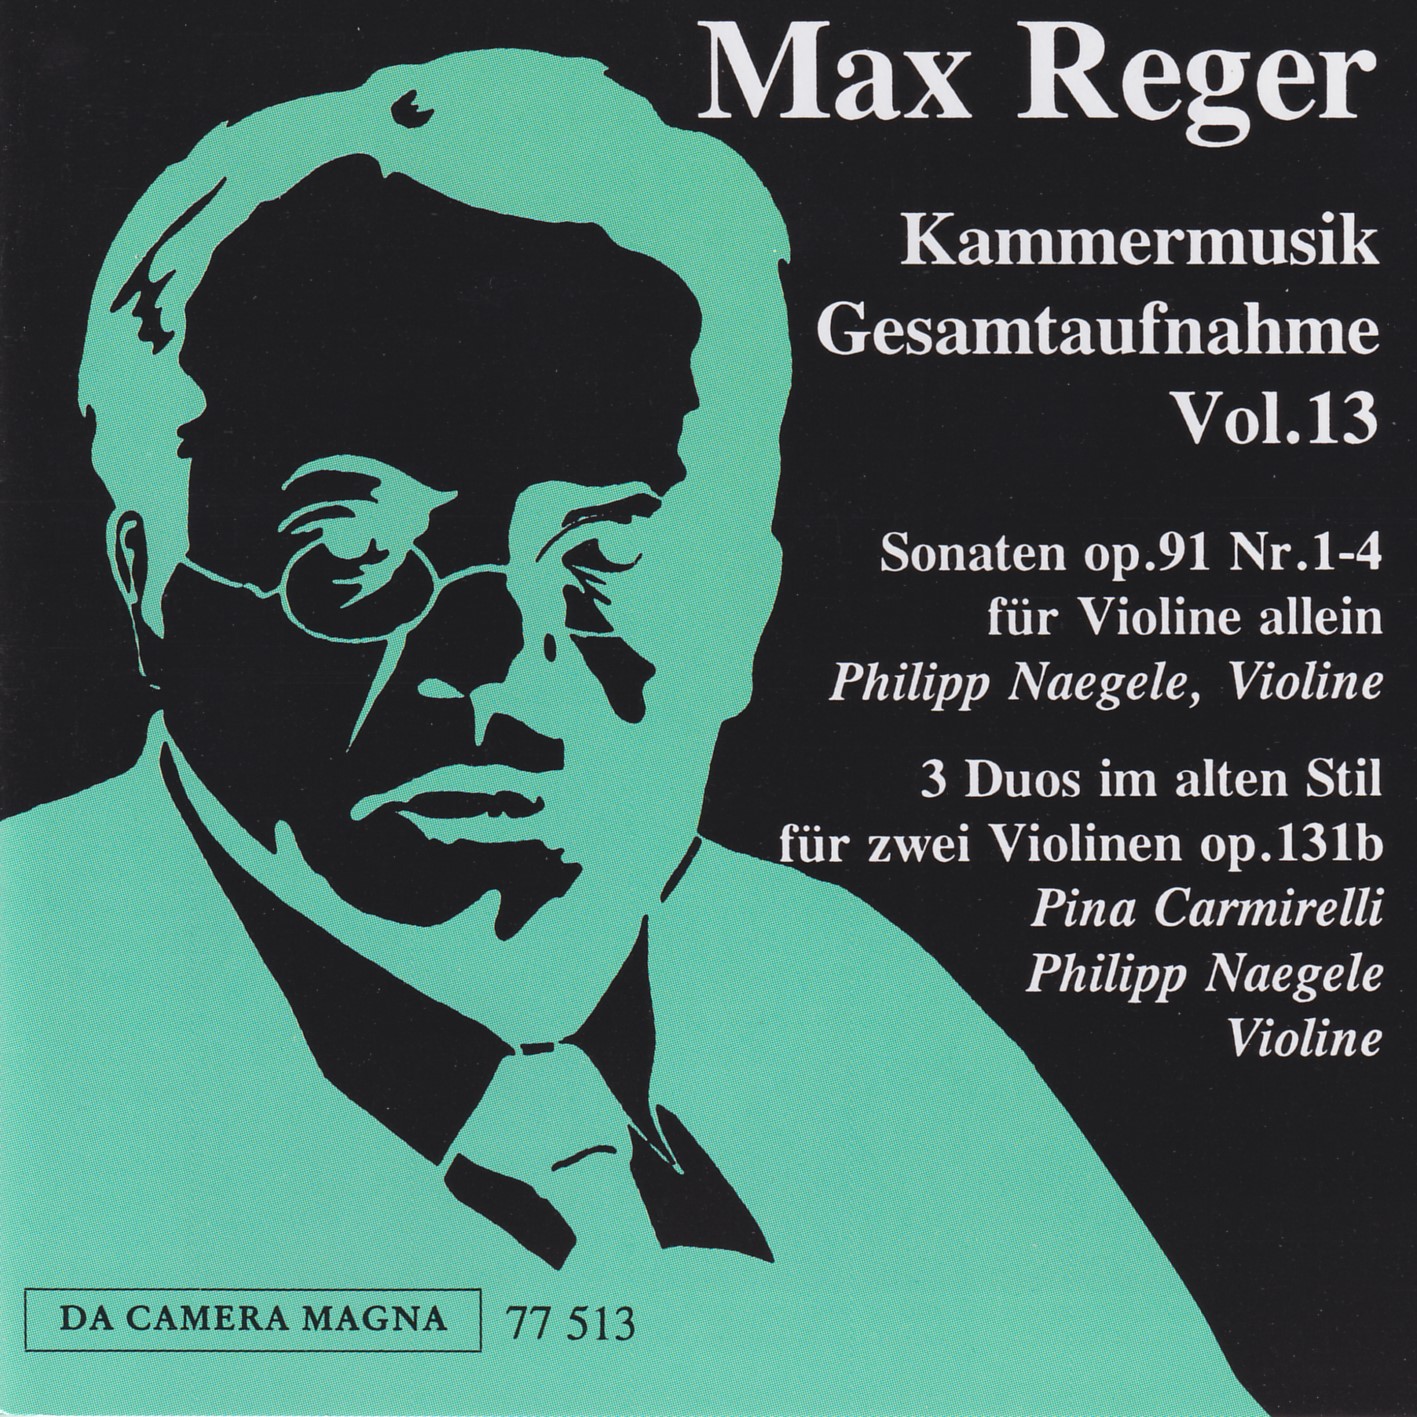 Max Reger - Kammermusik komplett Vol. 13